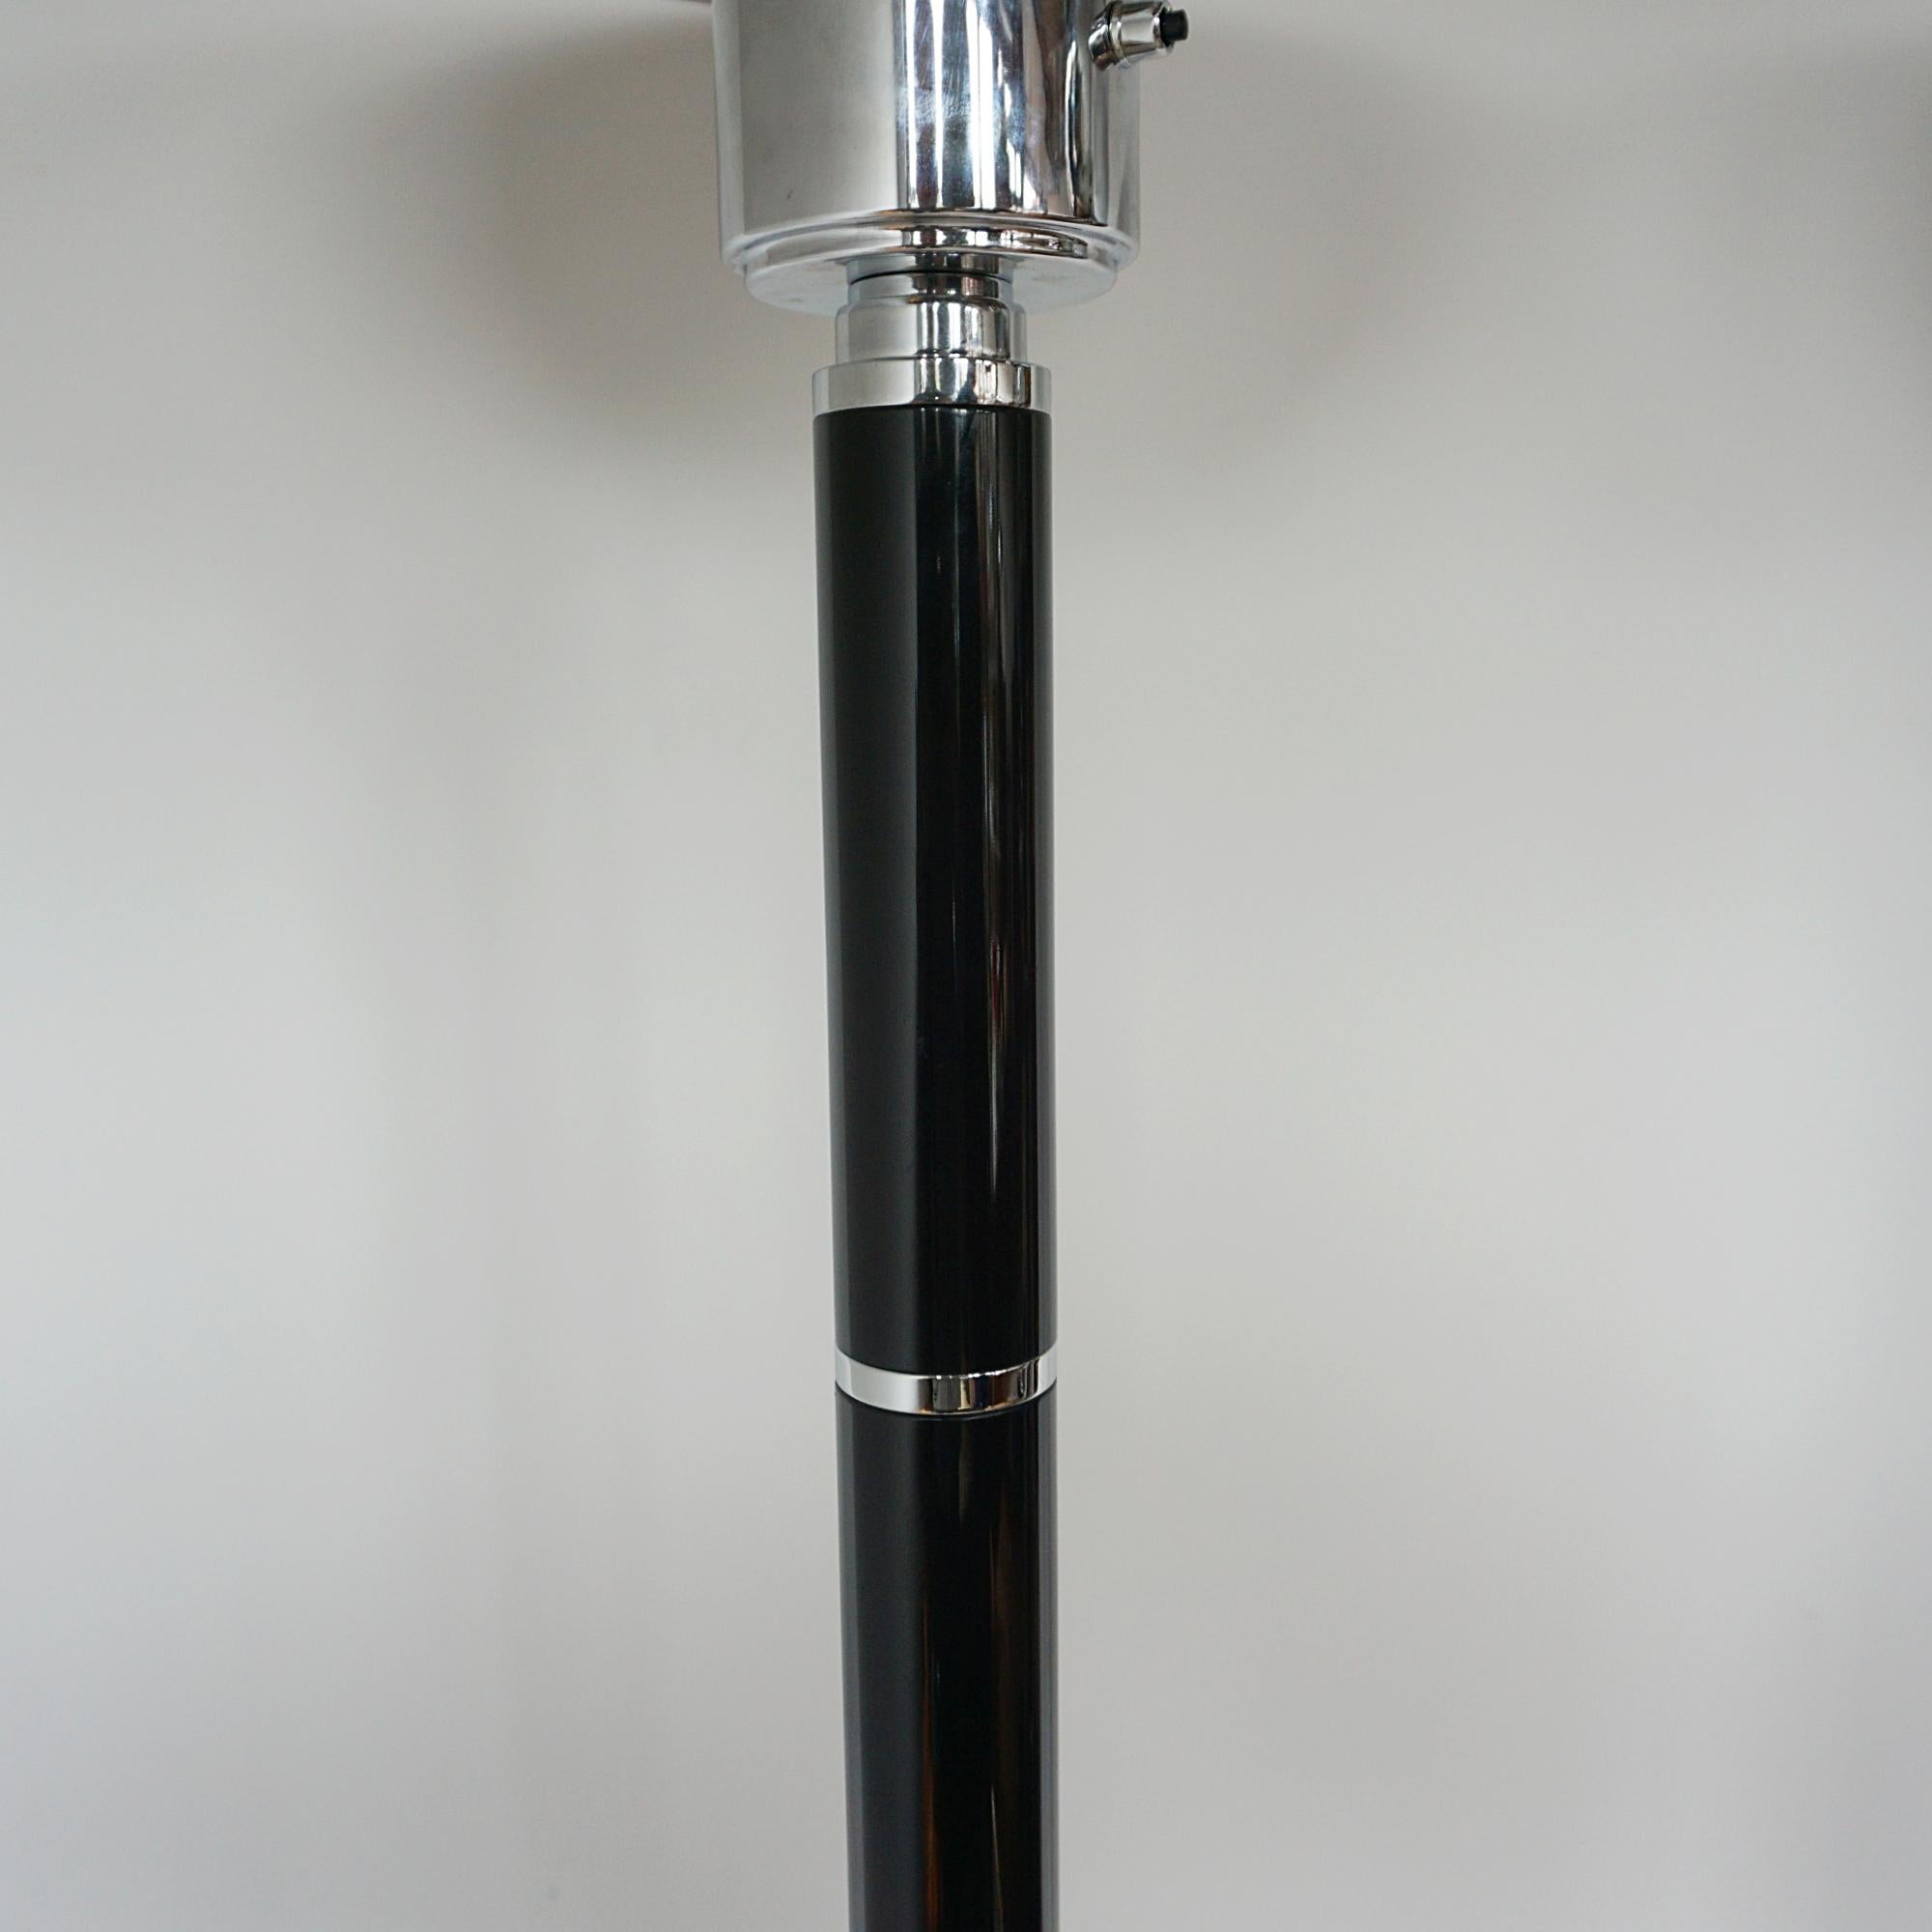 Ein Paar Stehlampen im Art-Deco-Stil. Schwarze Bakelitstiele mit verchromten Metallbändern, die zu einem verchromten Metallschirm führen. Auf einem runden Sockel aus verchromtem Metall. 

Abmessungen: H 172cm T des Sockels 32cm des Schirms